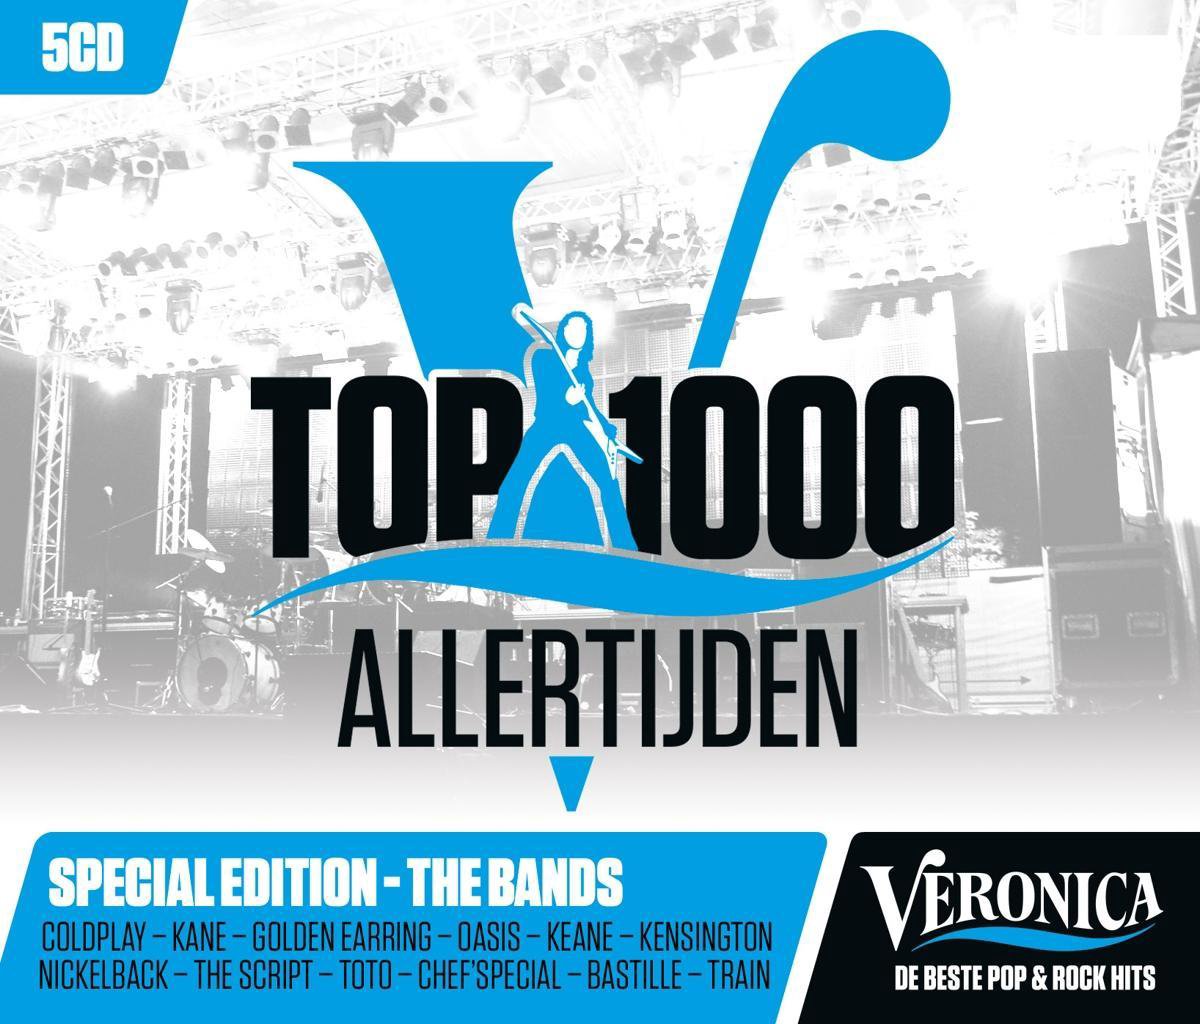 Veronica Top 1000 Allertijden - 2017 - Radio Veronica